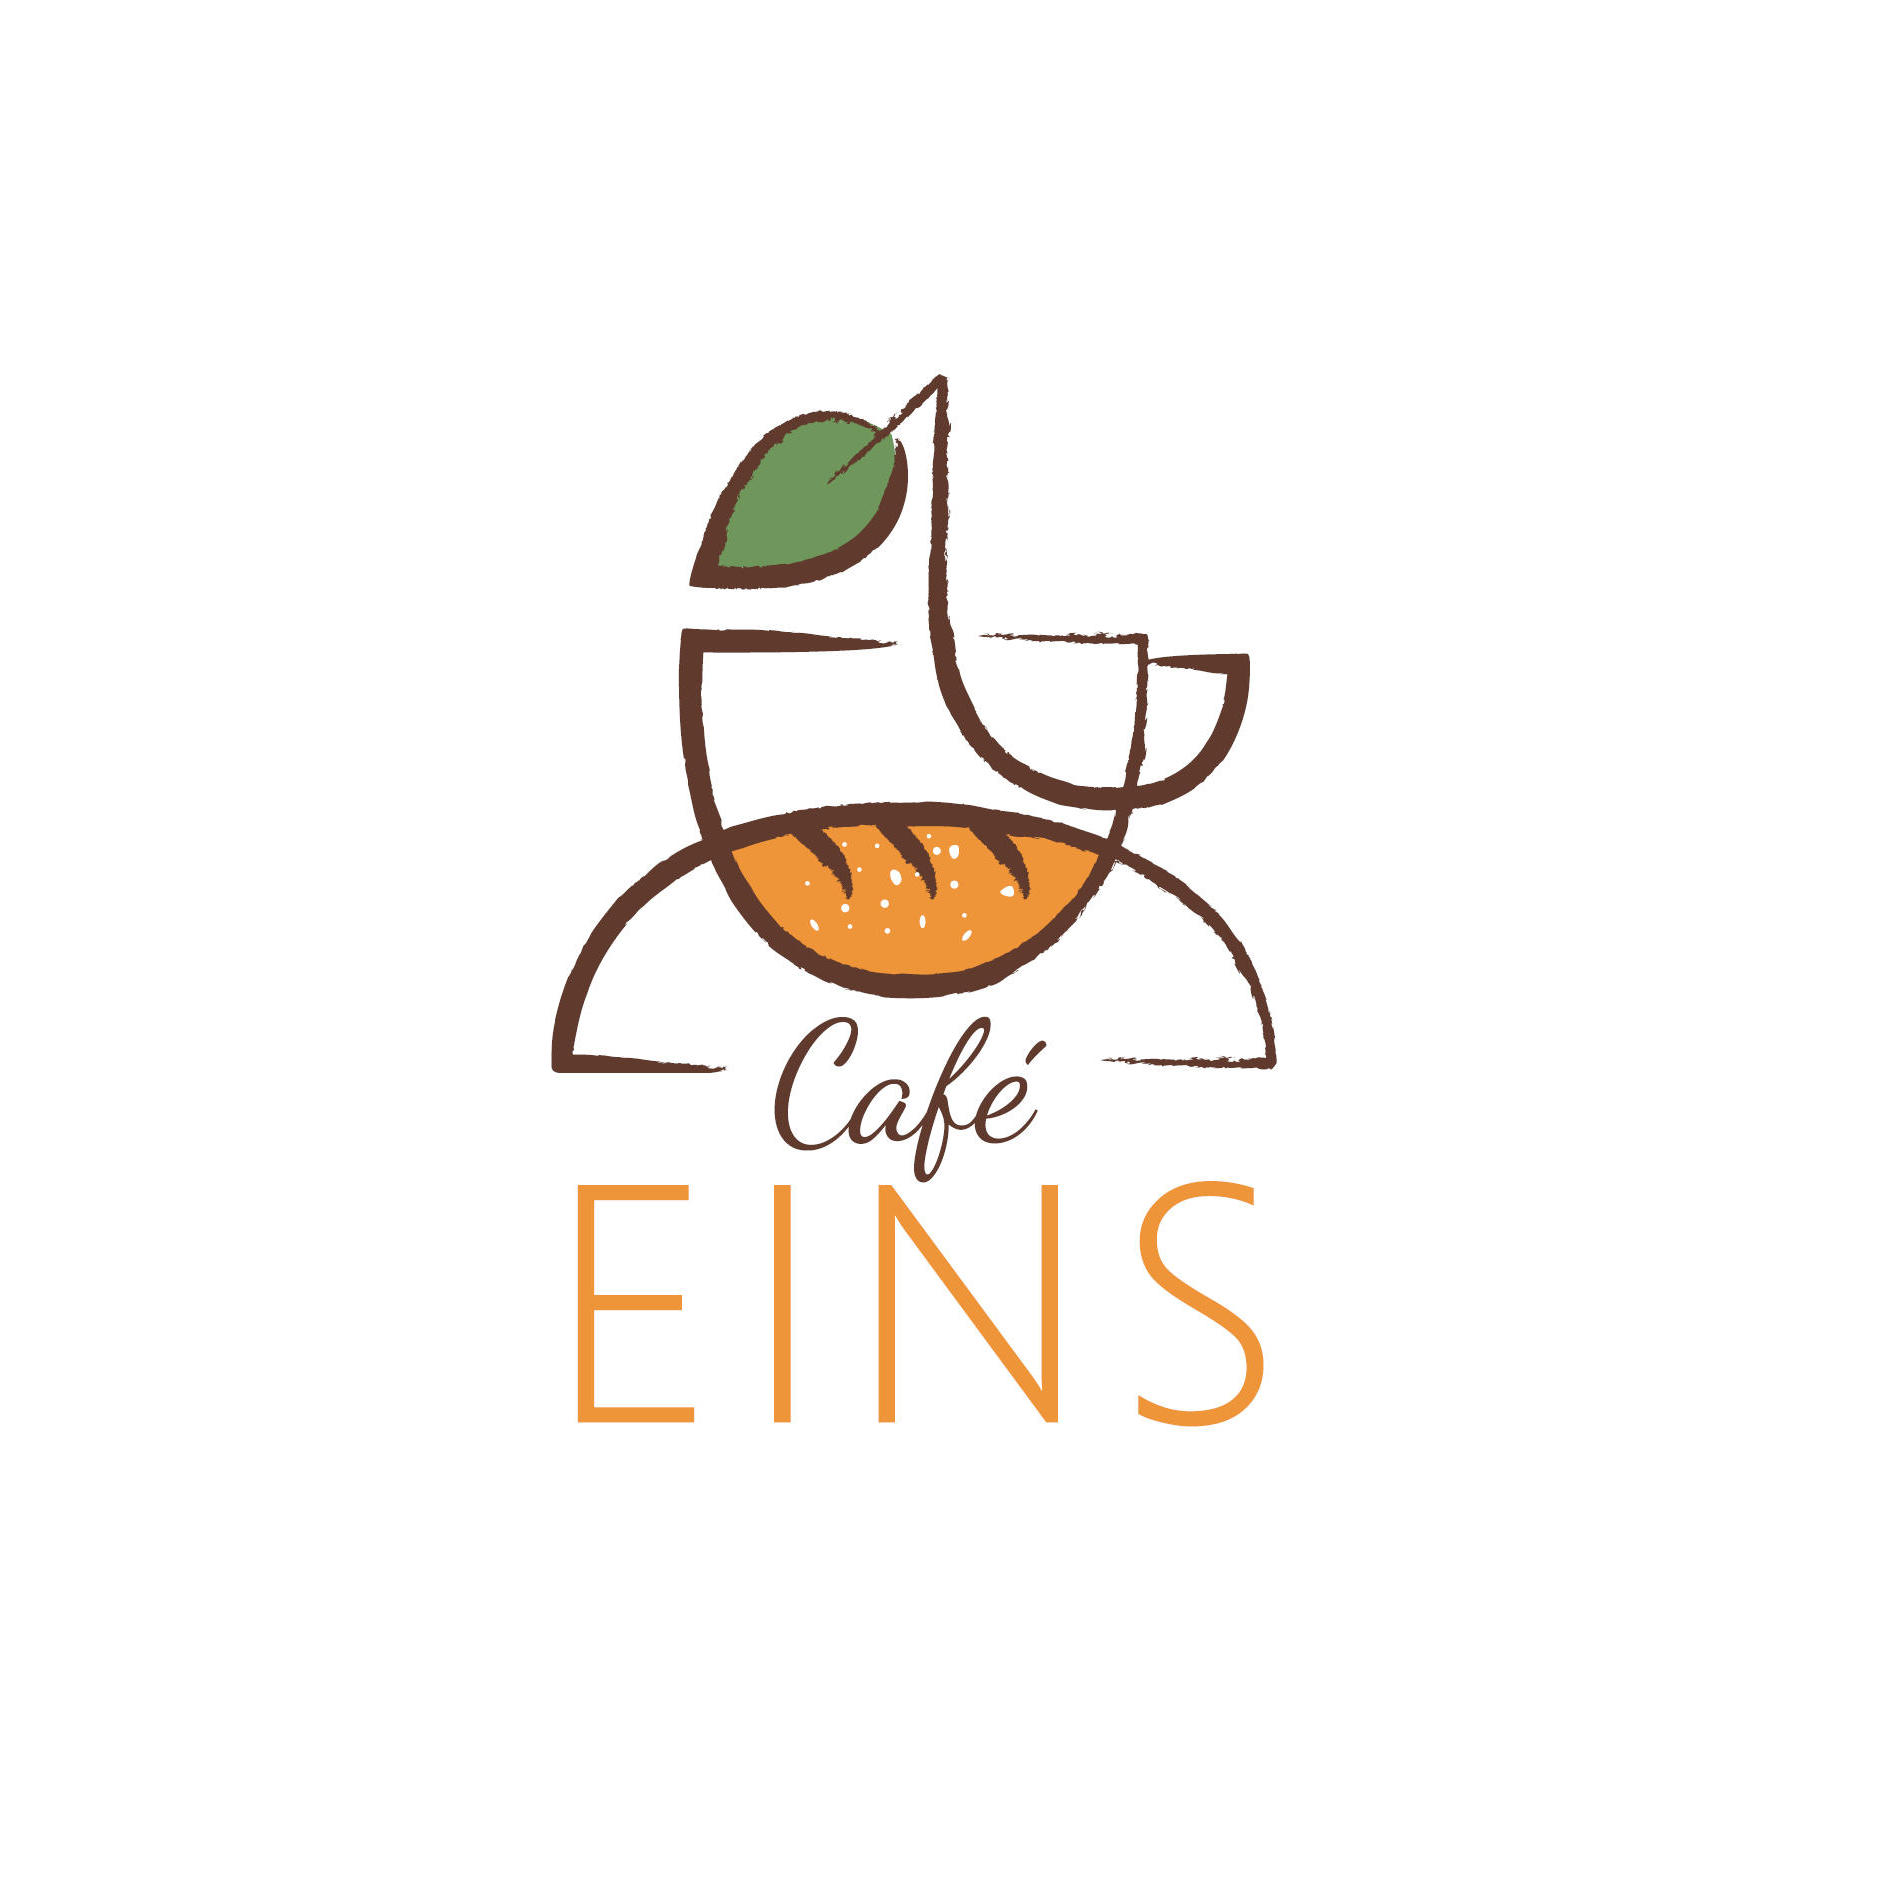 Café Eins in Isen - Logo